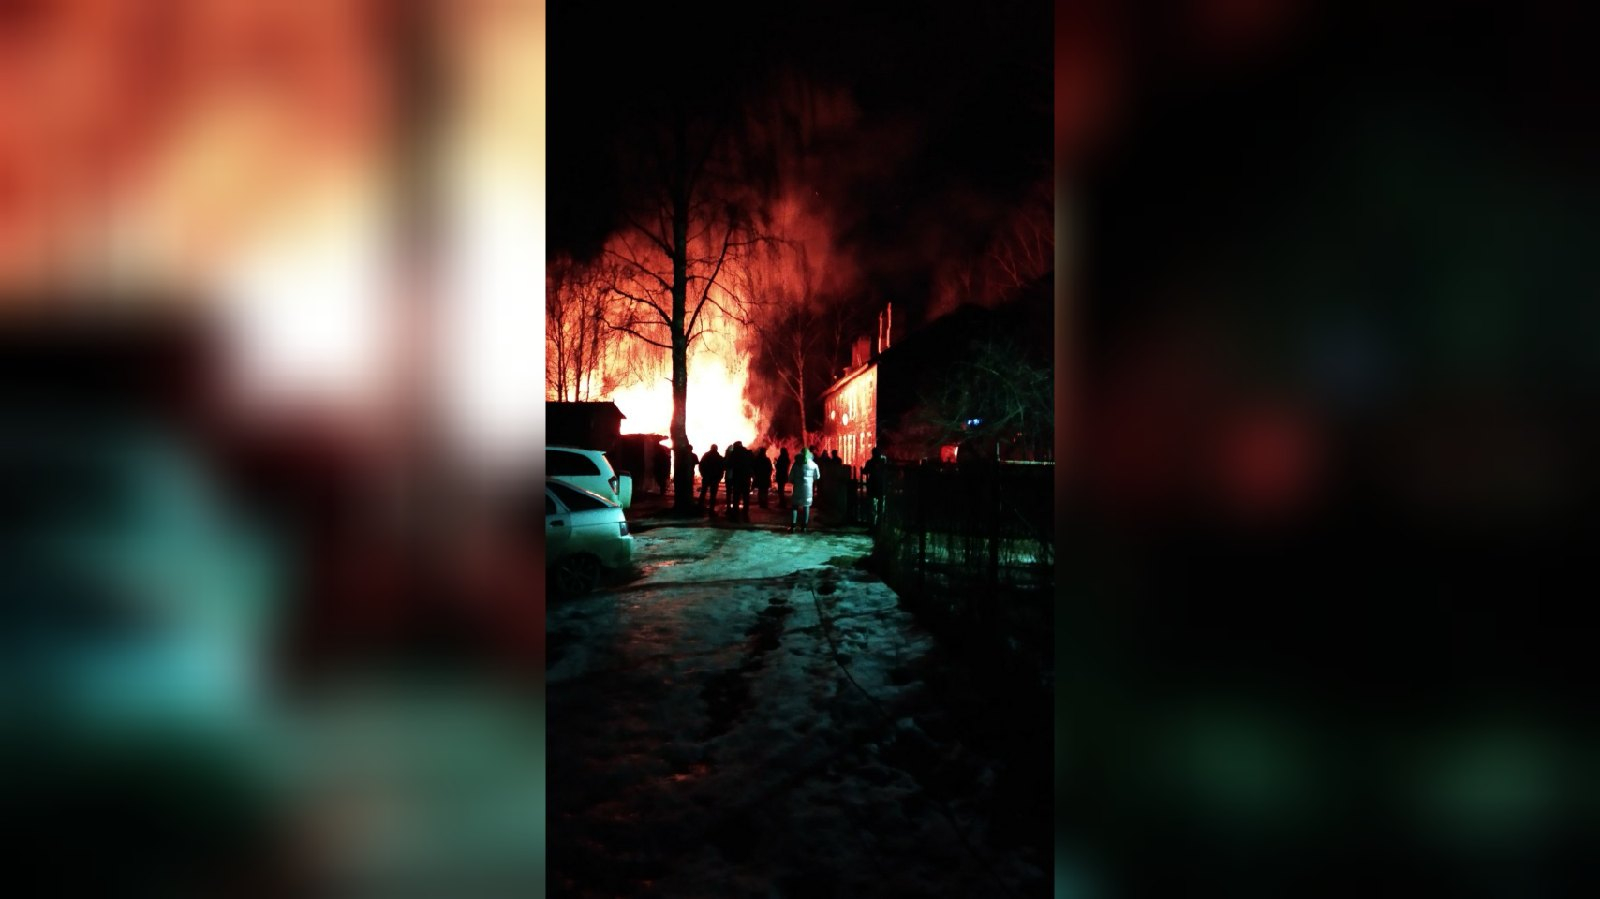 "Испуганных детей выносили в одеялах": что рассказали очевидцы о страшном пожаре в Ярославле